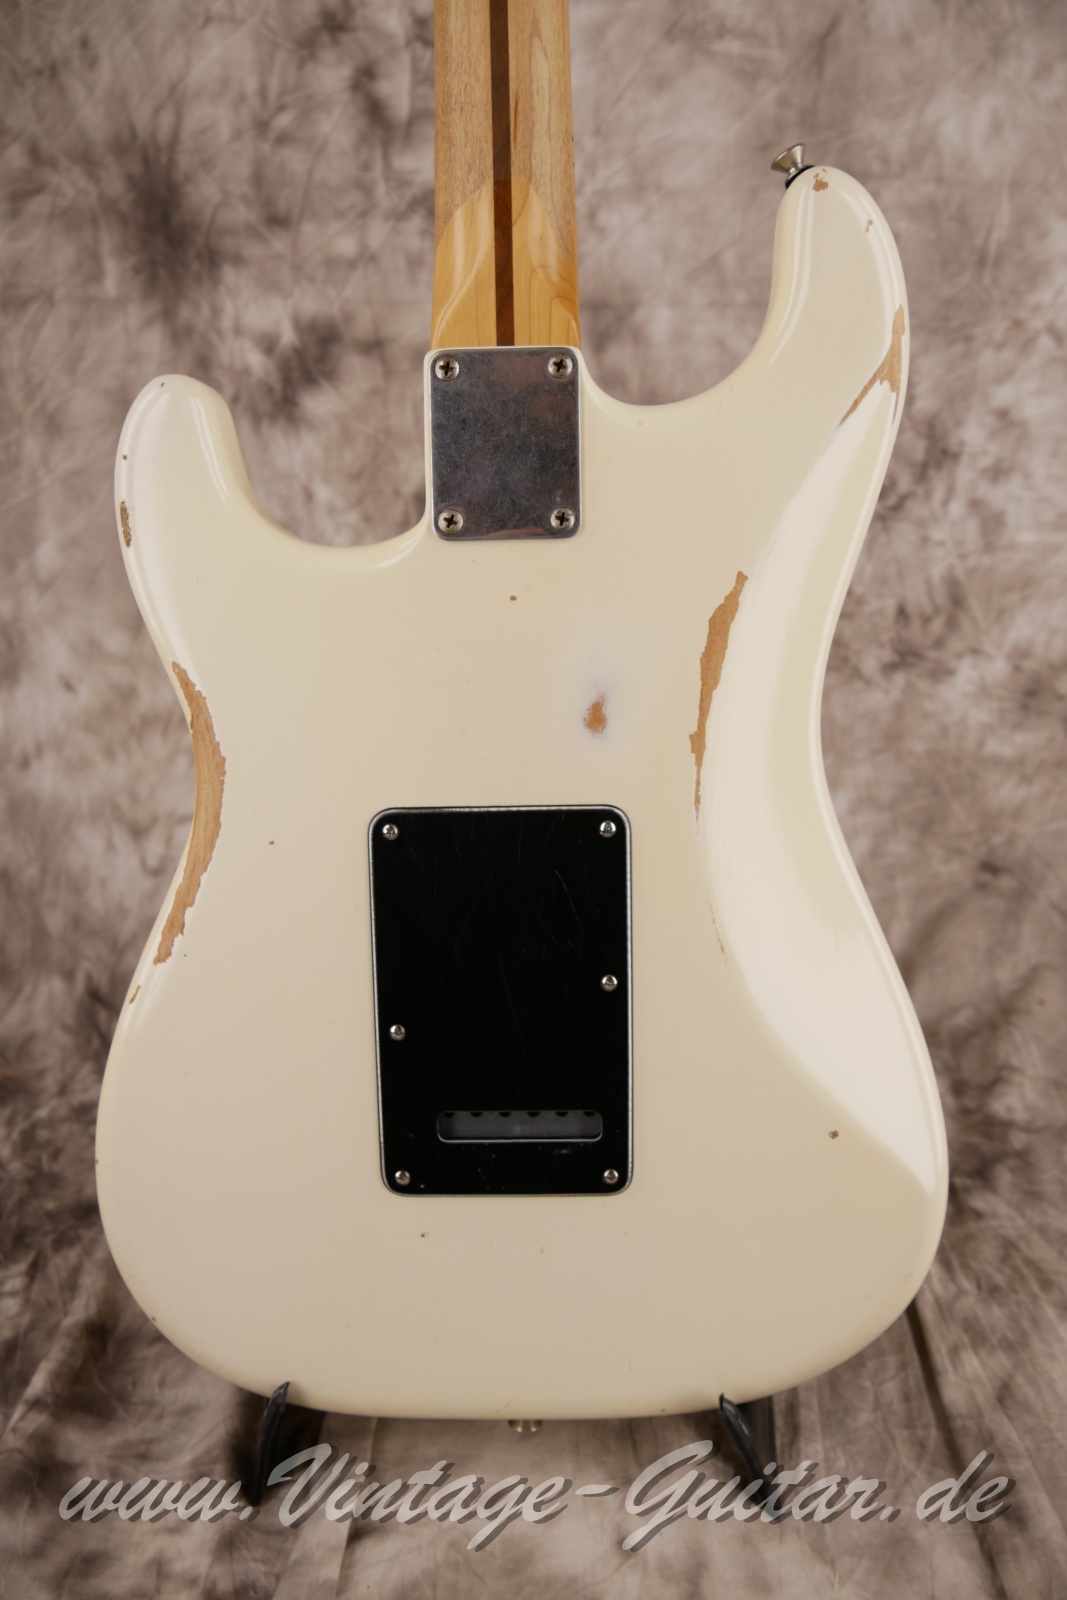 Fender-Stratocaster-roadworn-player-series-60s-reissue-2011-olympic-white-008.jpg